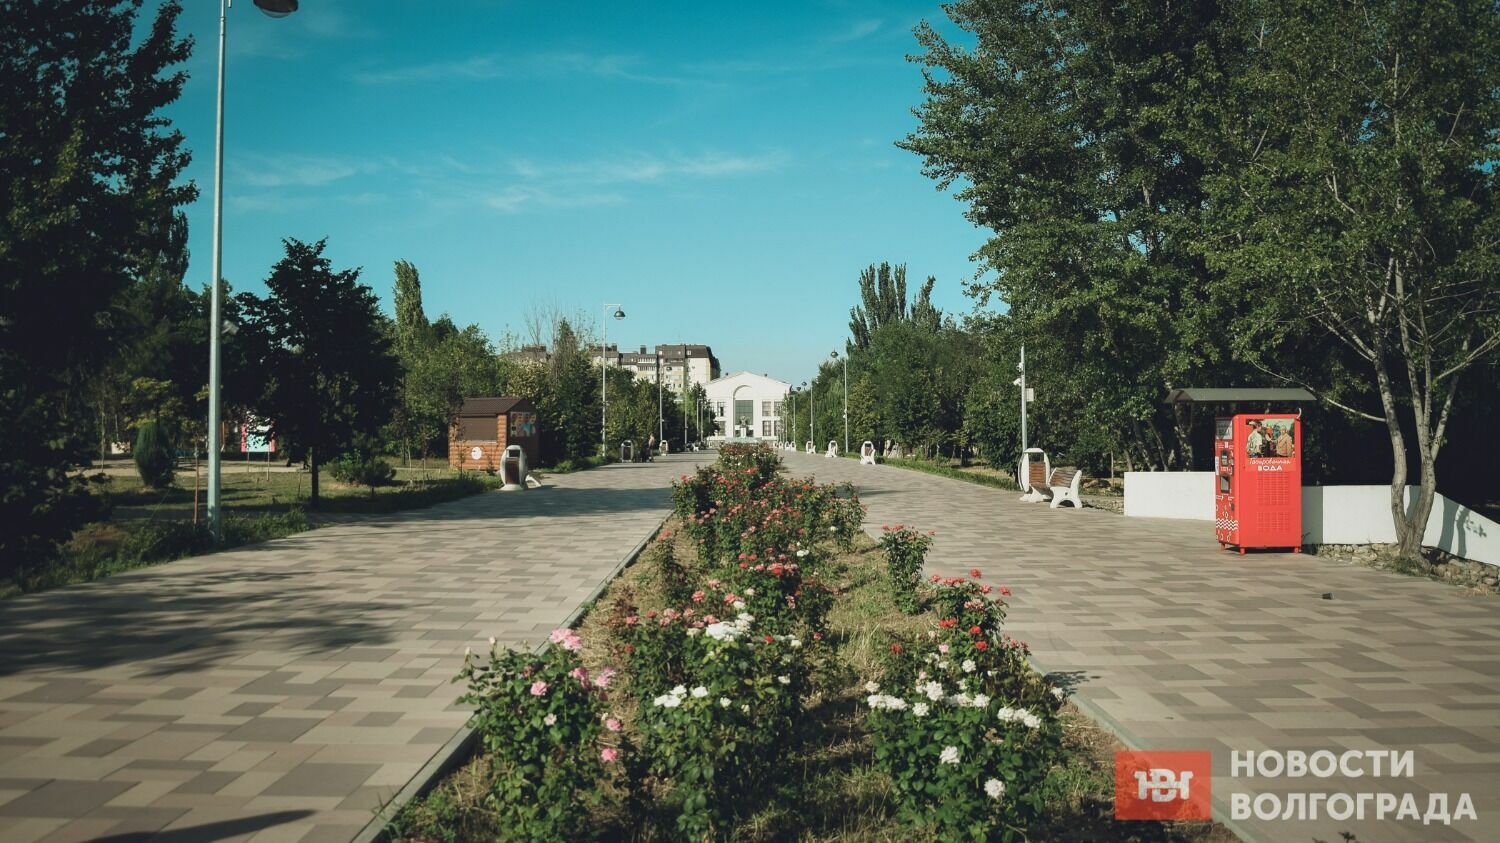 Несколько лет назад в Краснооктябрьском районе привели в порядок парк имени Гагарина